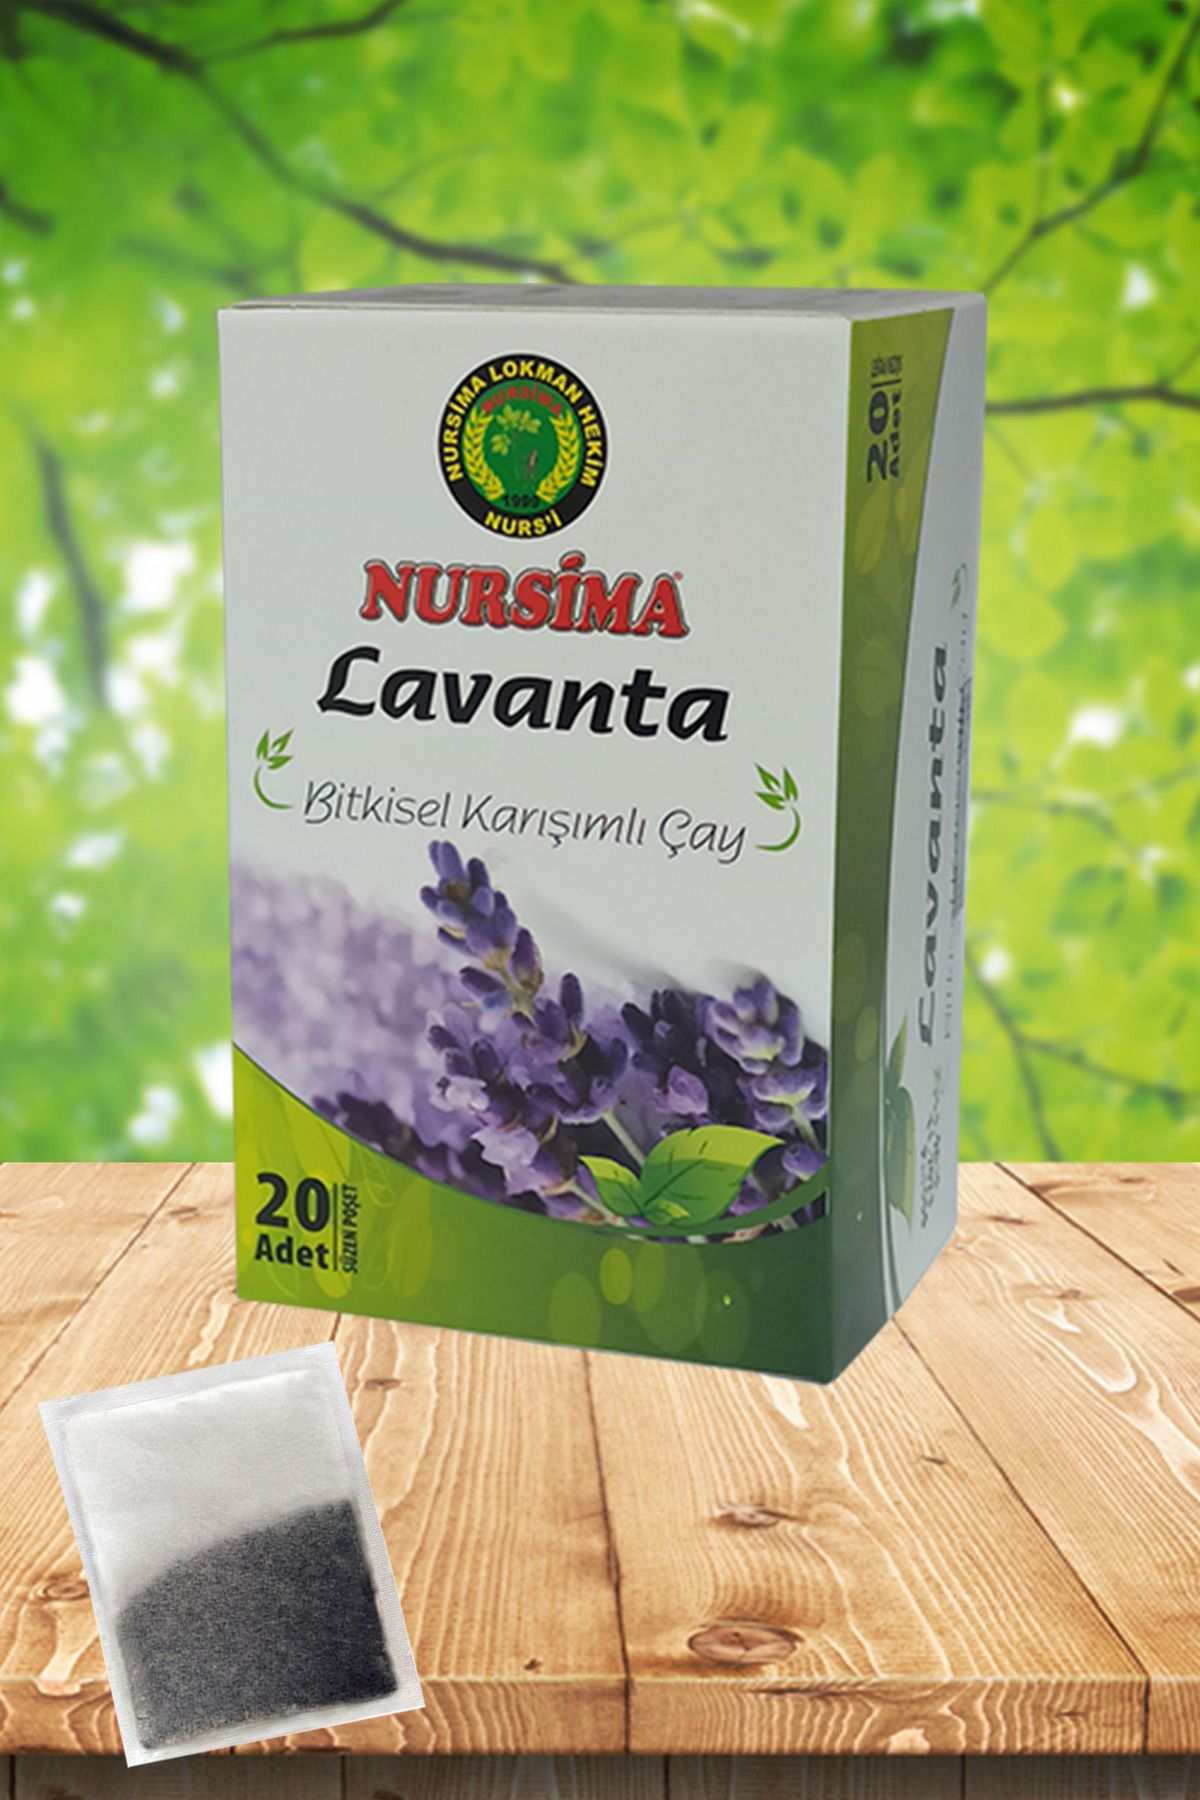 Nursima Lavanta Bitkisel Karışımlı Çay 20 'li Süzen Poşet